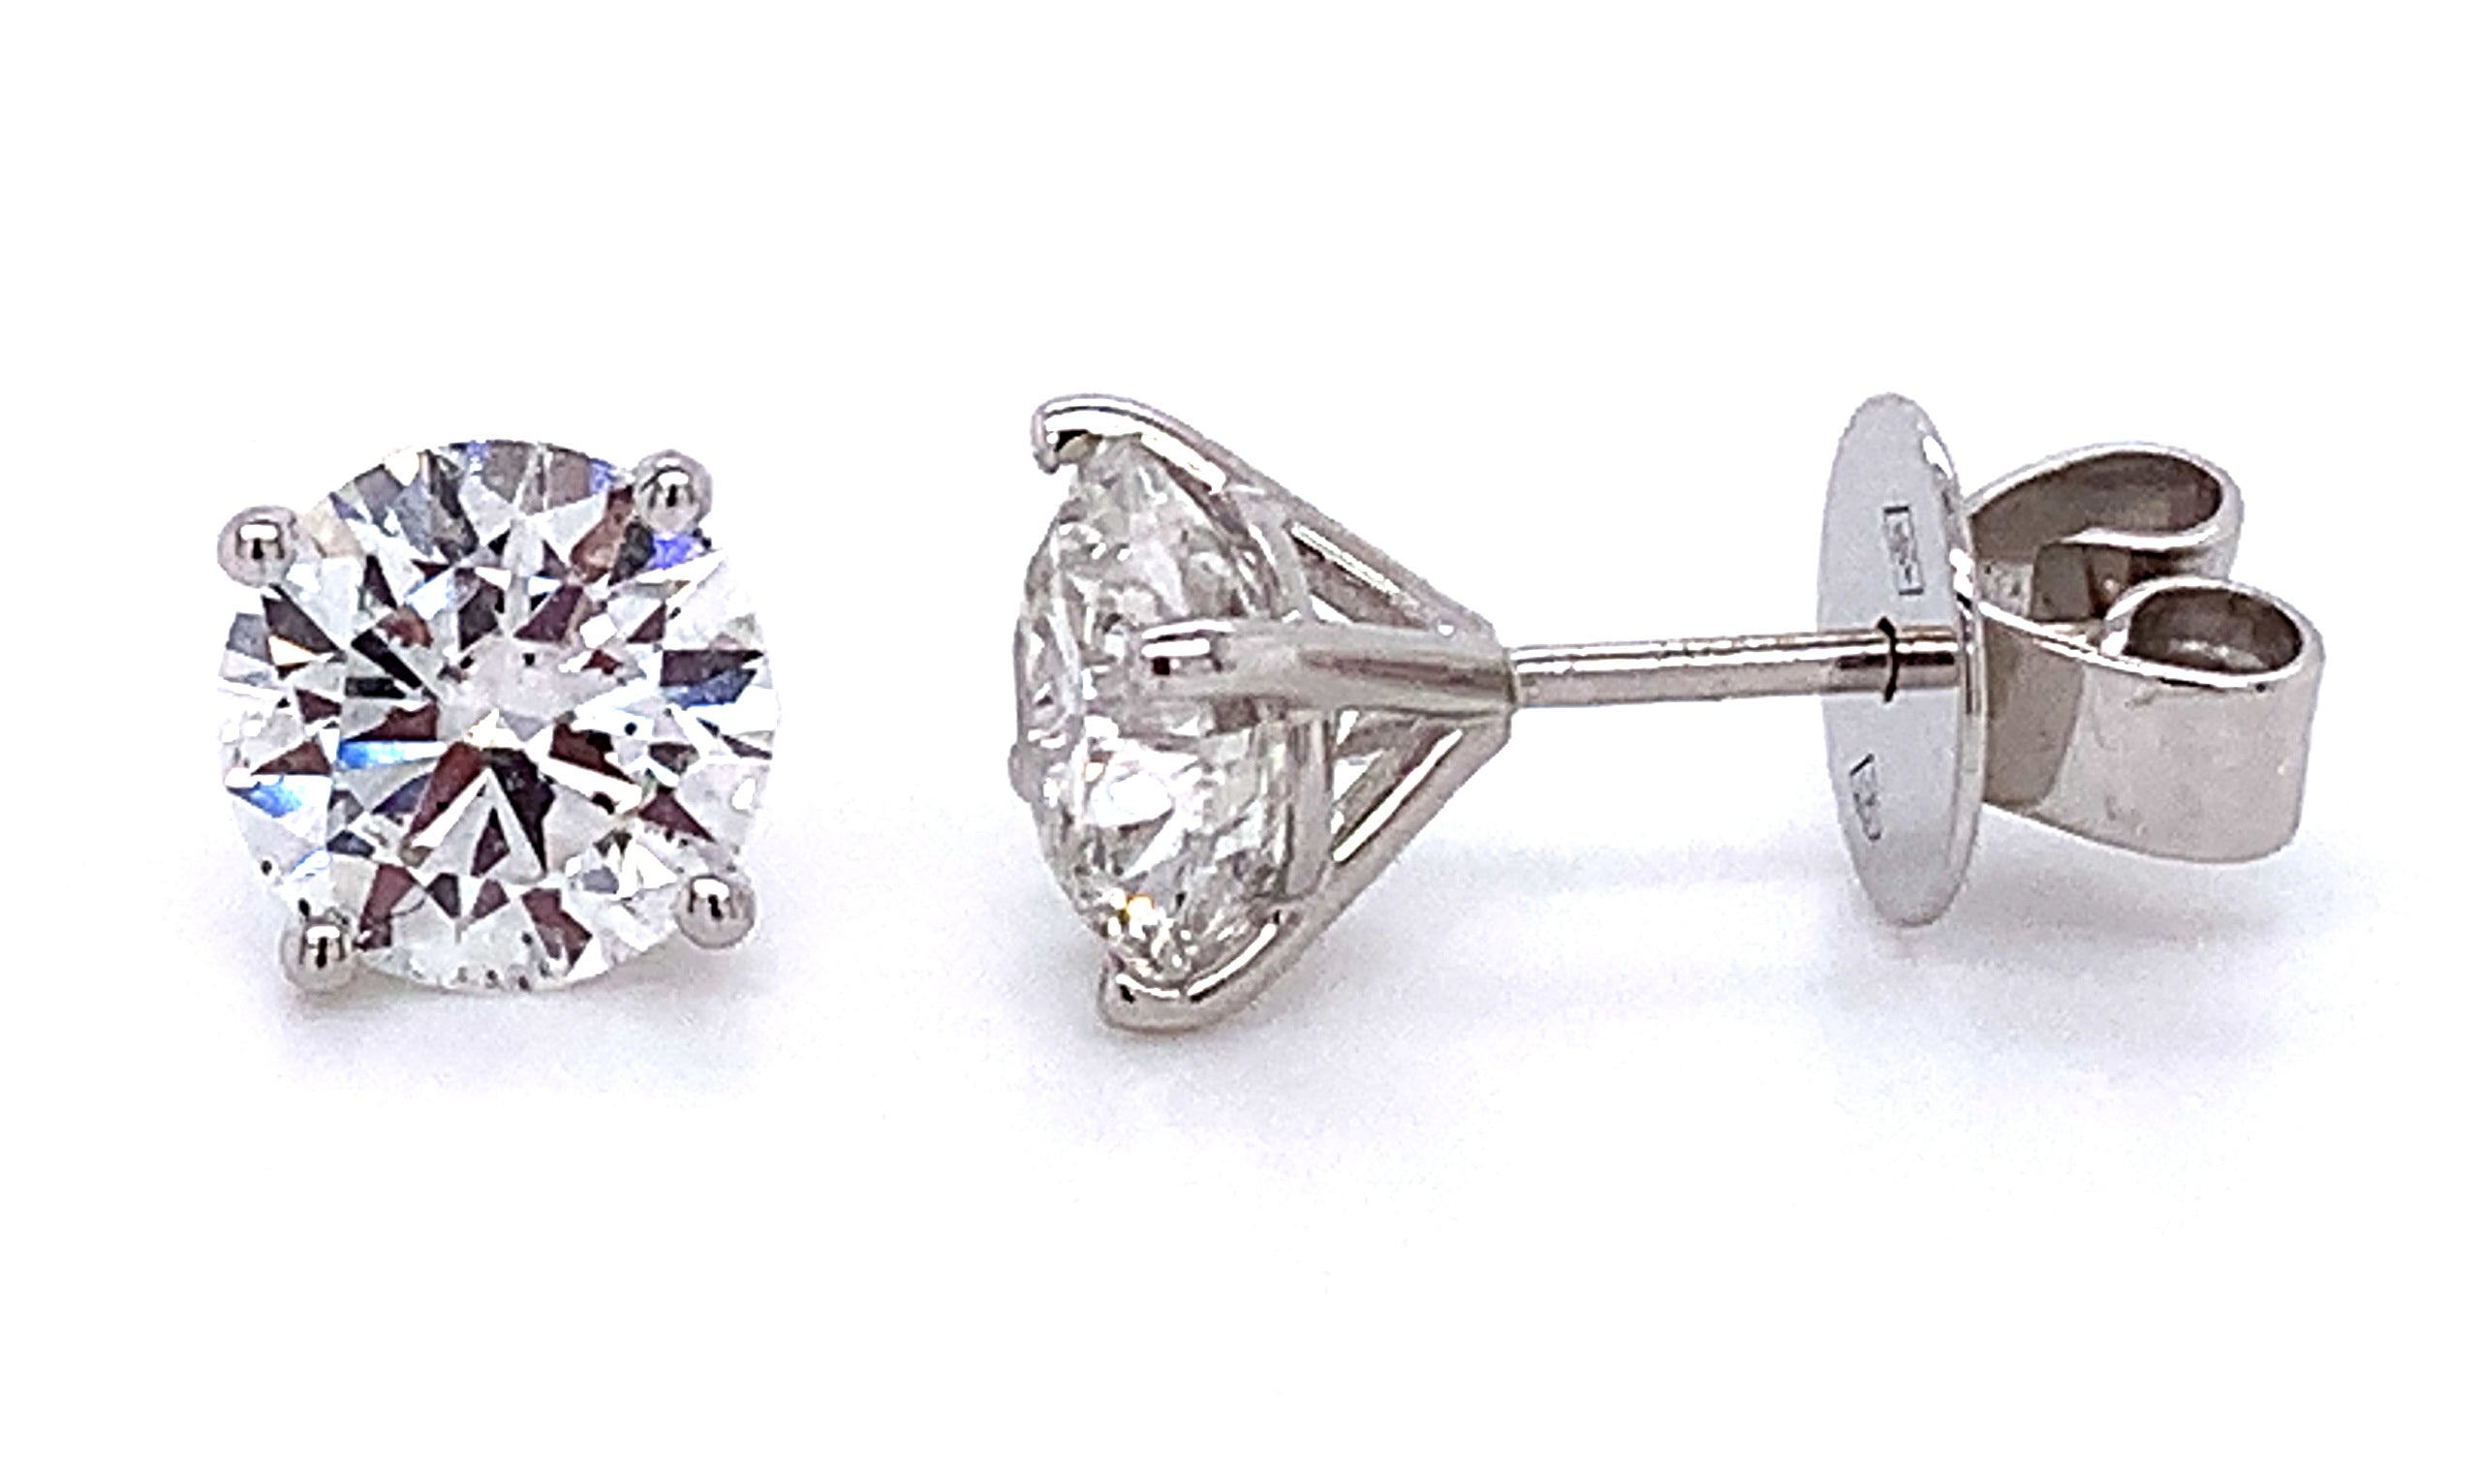 40 Pt Lab Diamond Stud Earring: buy online in NYC. Best price